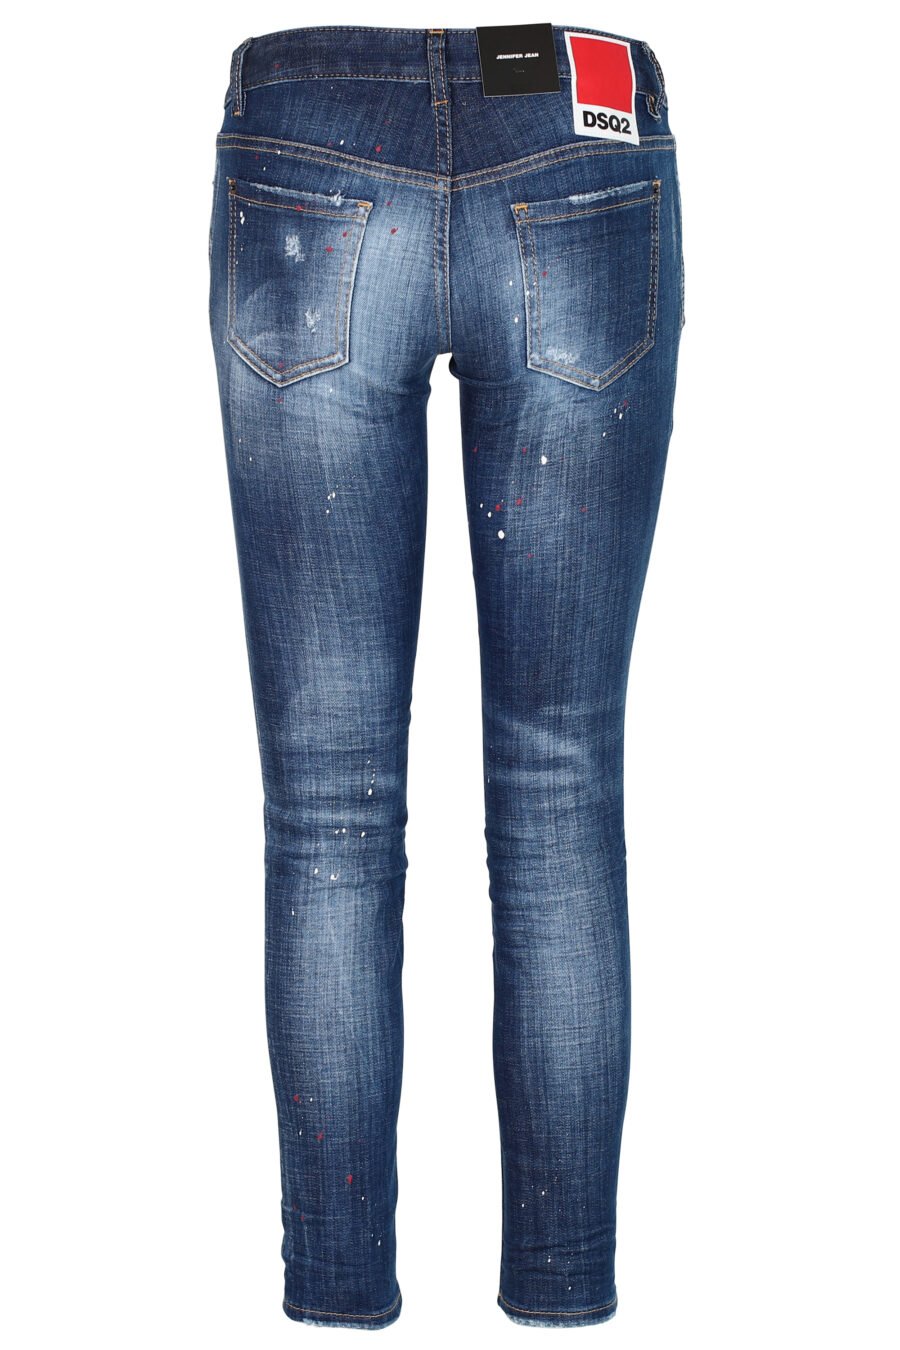 Jeans "Jennifer Jean" blau mit Farbspritzern und Abnutzungseffekt - 8052134937259 3